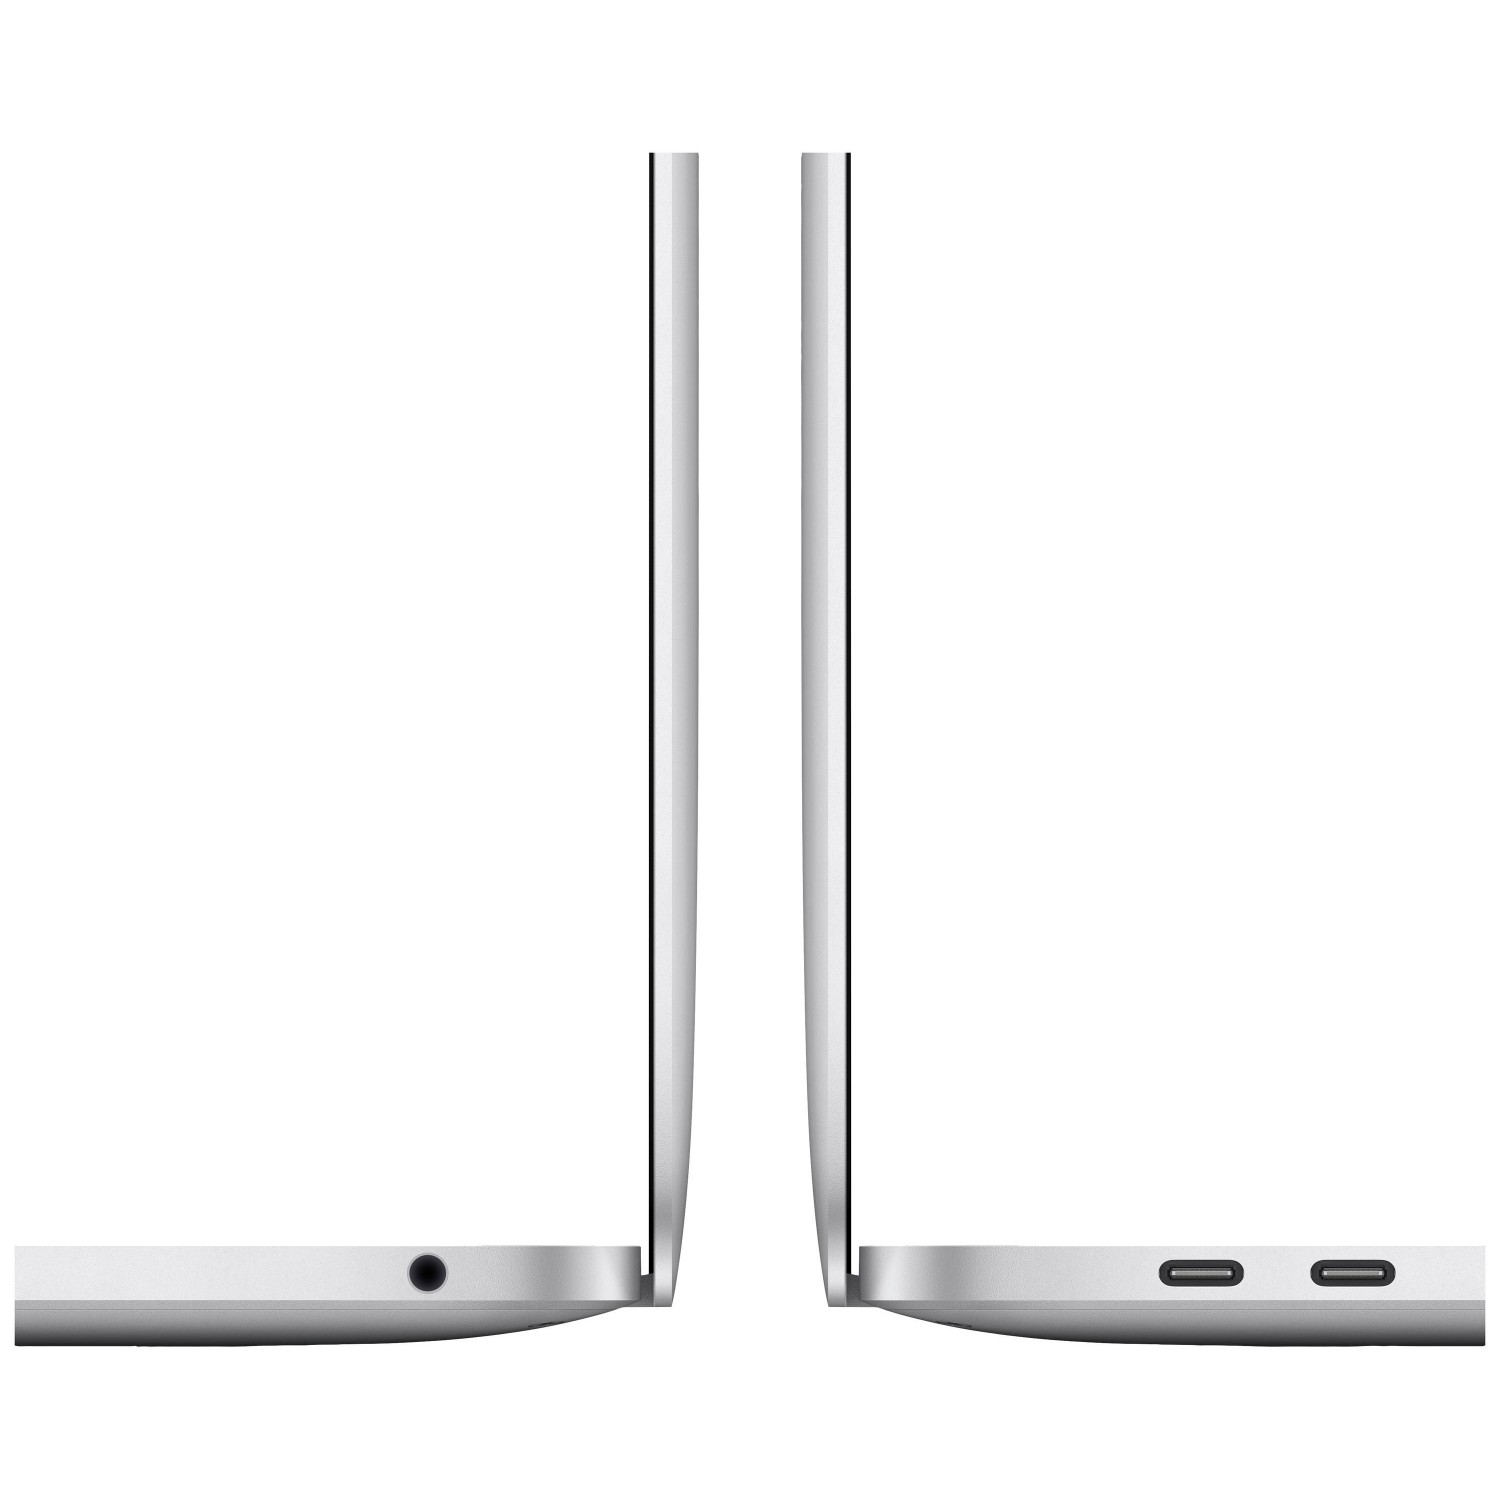 لپ تاپ Apple MacBook Pro 13 2020 CTO - Silver - D-3